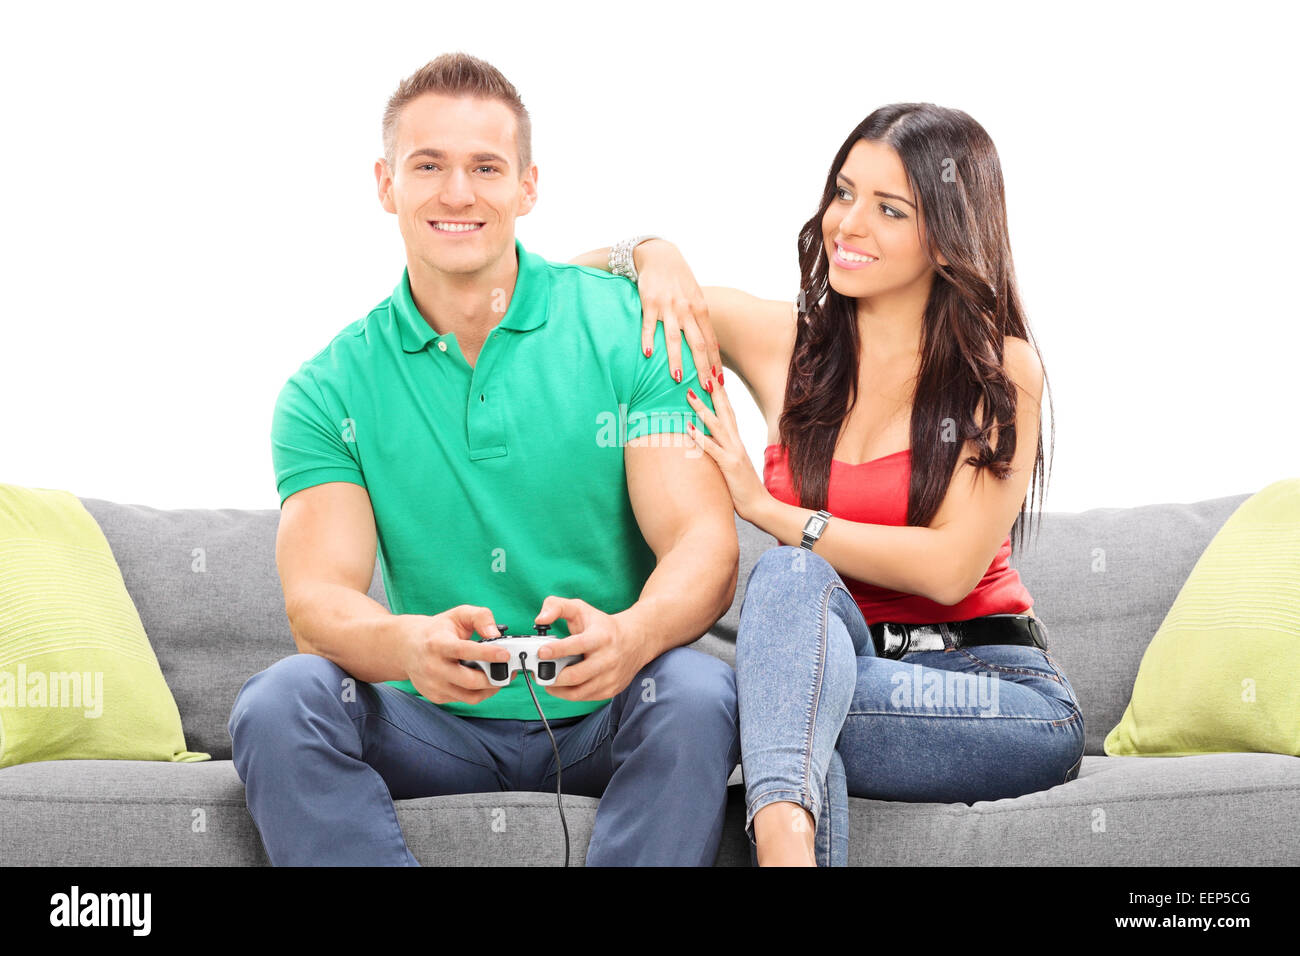 Mädchen, die gerade ihren Freund spielen Videospiel sitzen auf einem Sofa auf weißen Hintergrund isoliert Stockfoto